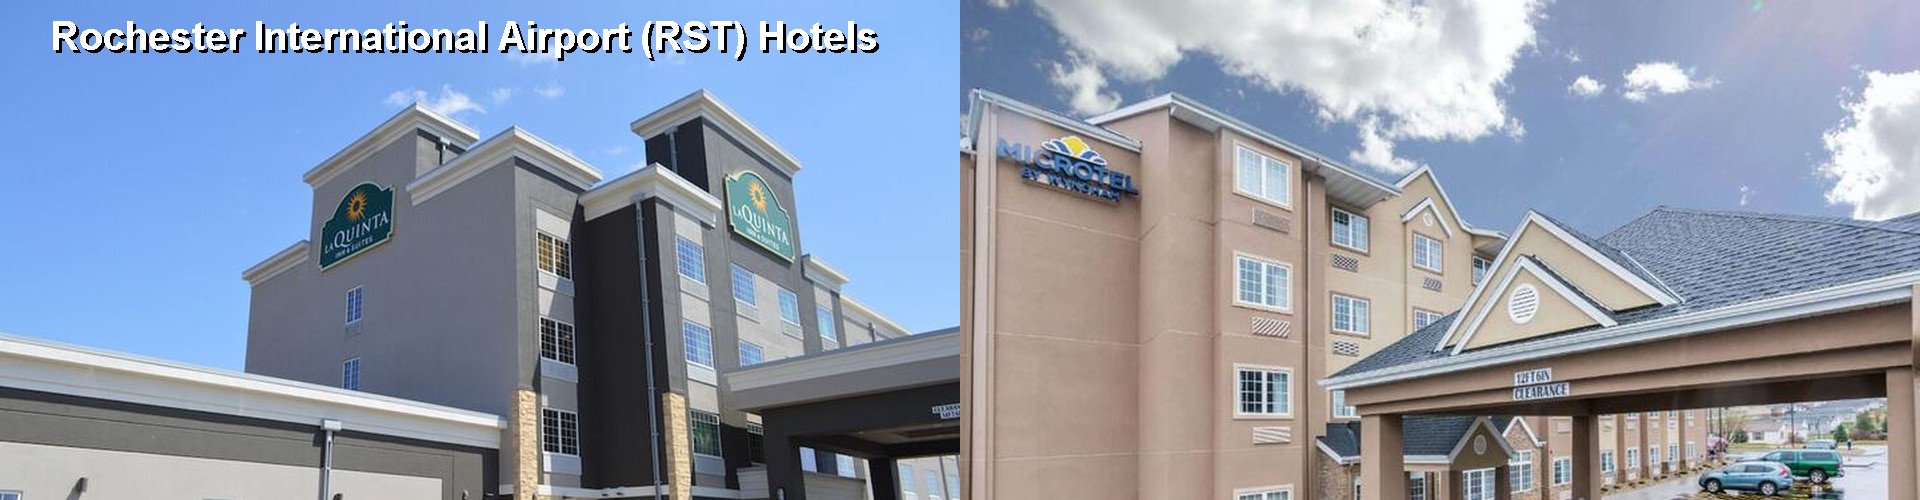 5 Best Hotels near Rochester International Airport (RST)